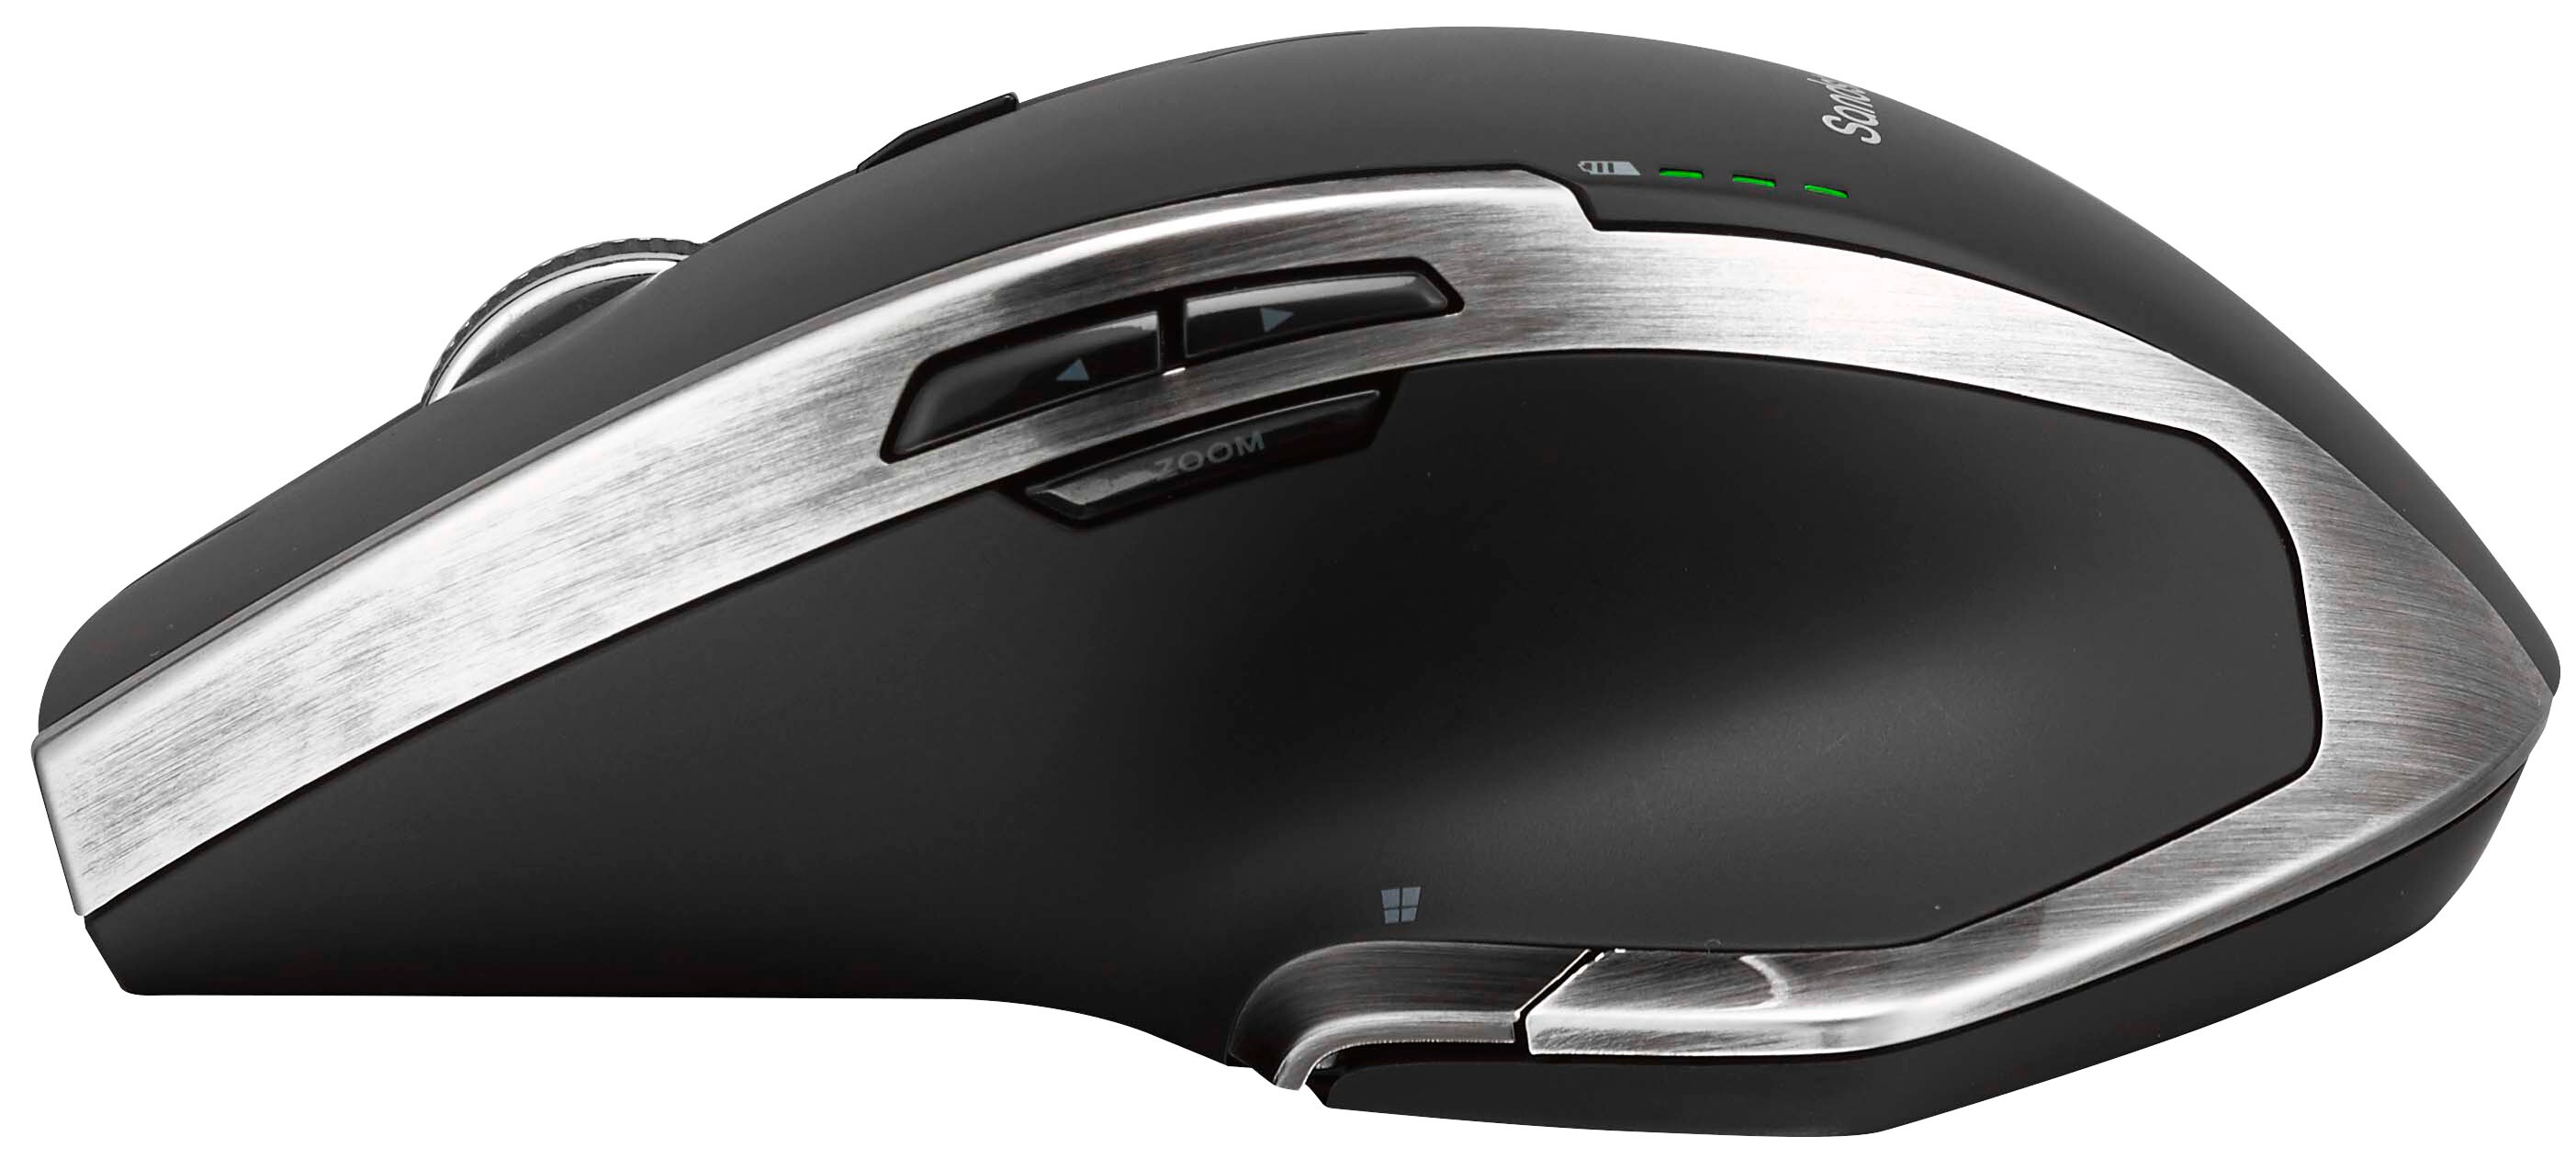 Sandstrøm S500 trådløse mus (sort/sølv) - PC-mus - Elkjøp